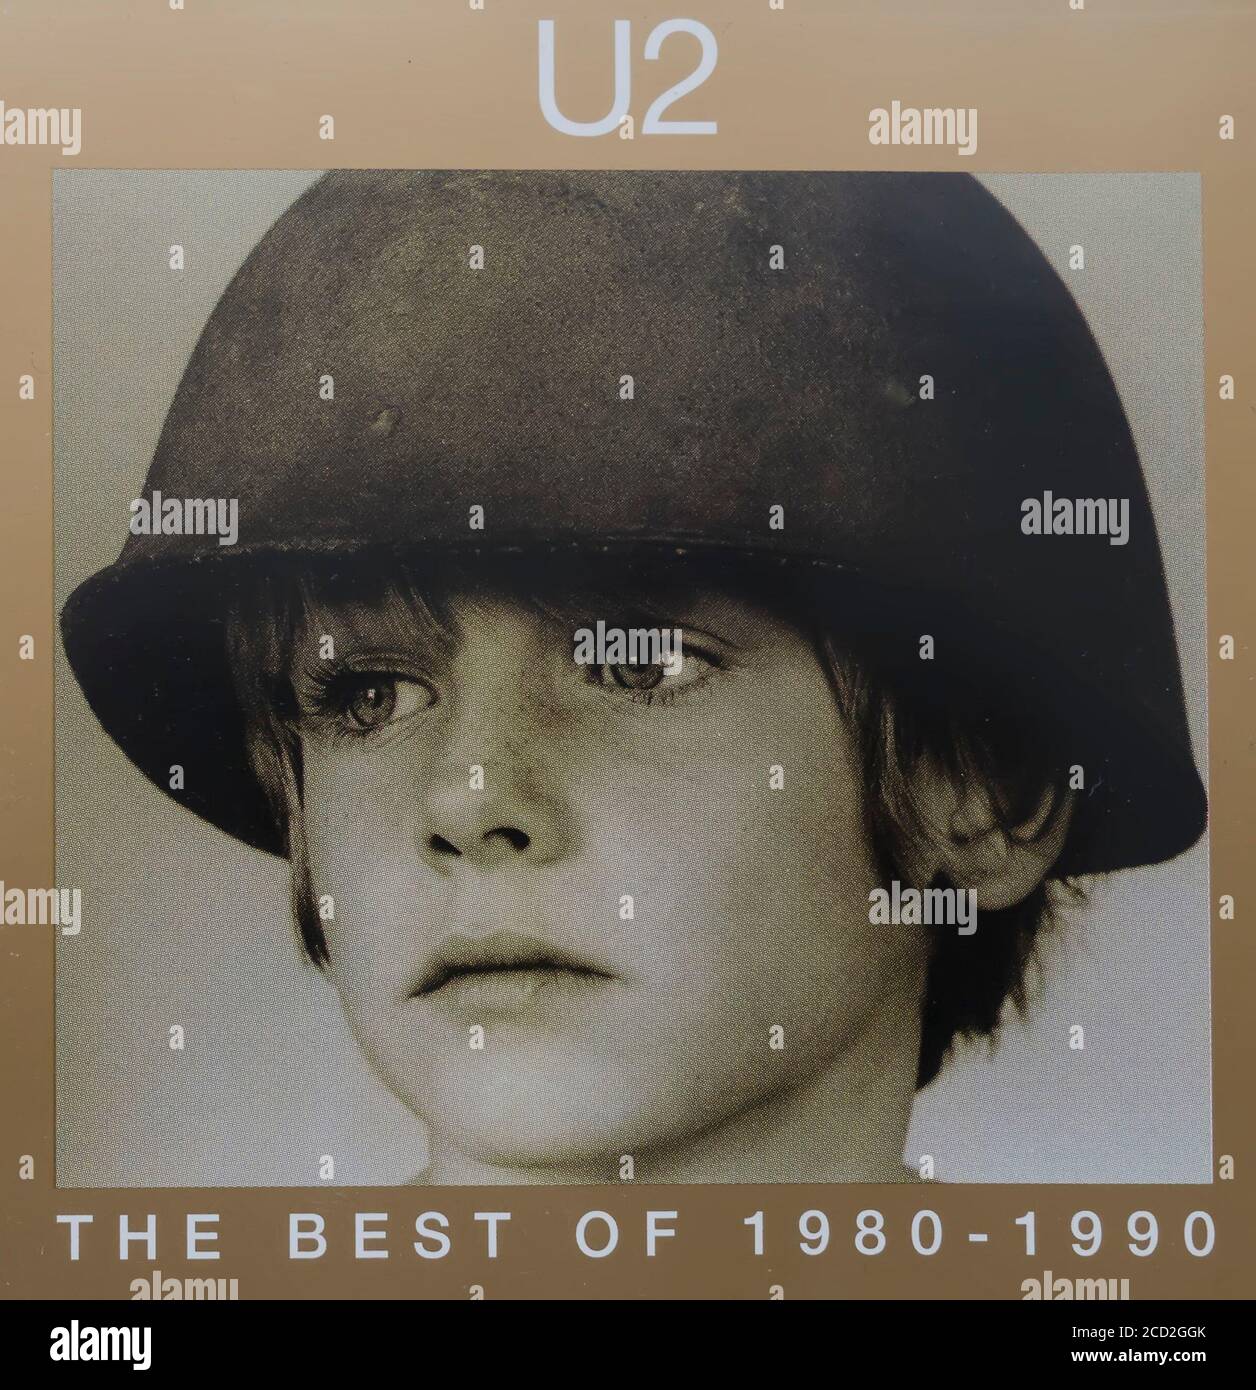 Imagen parcial de la portada del álbum U2 lo mejor de 1980 - 1990 Foto de stock